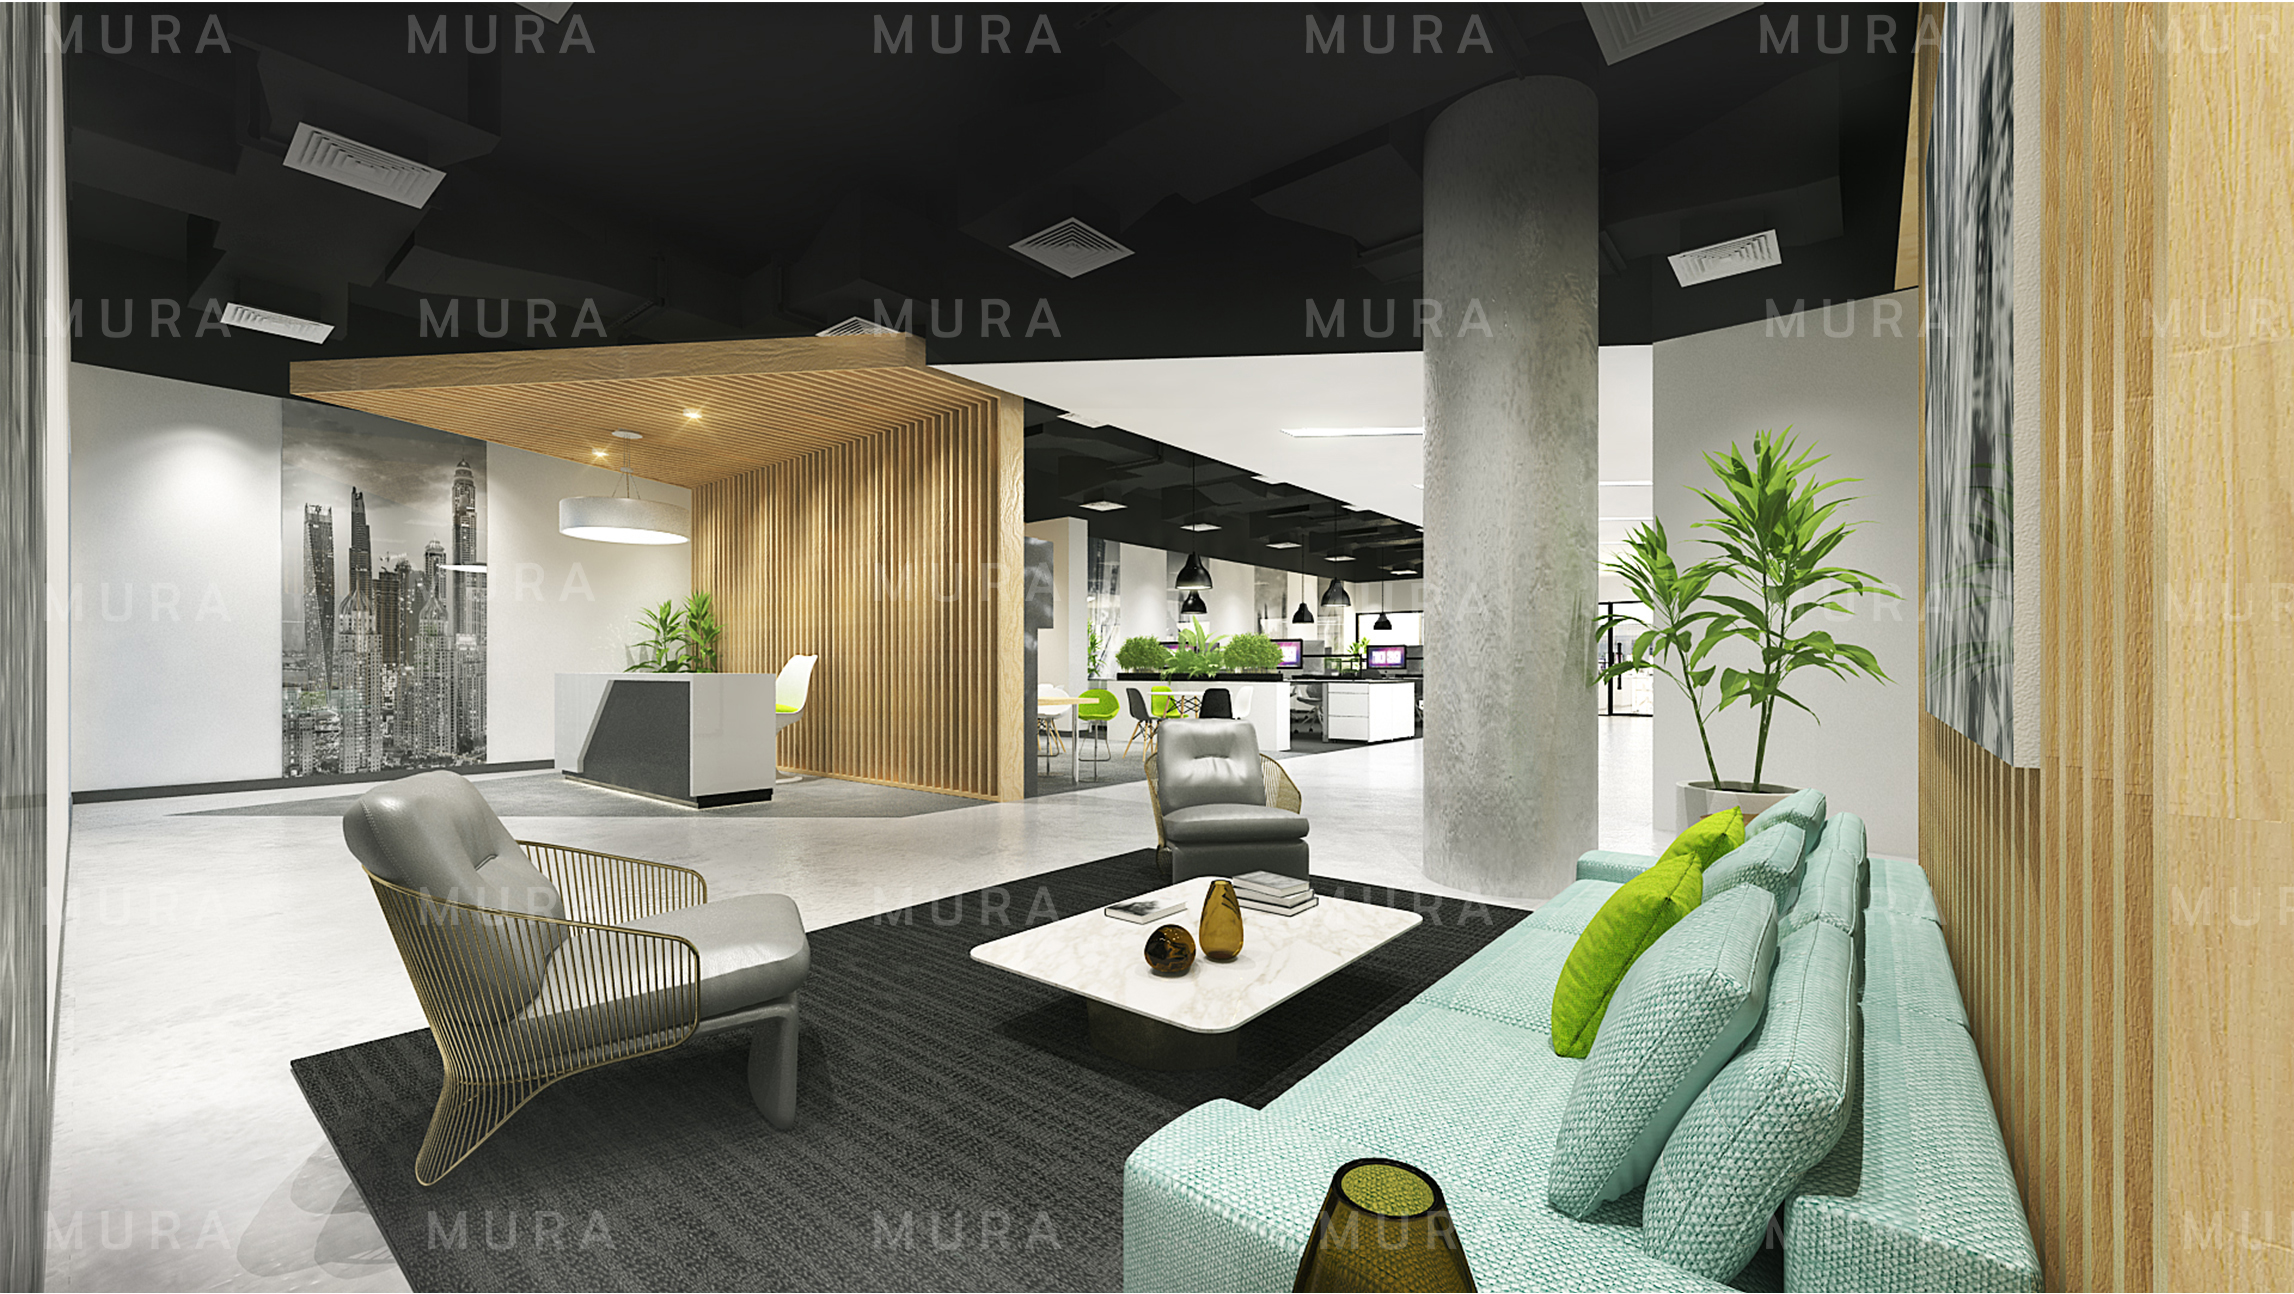 Office Interior Design Company In Dubai